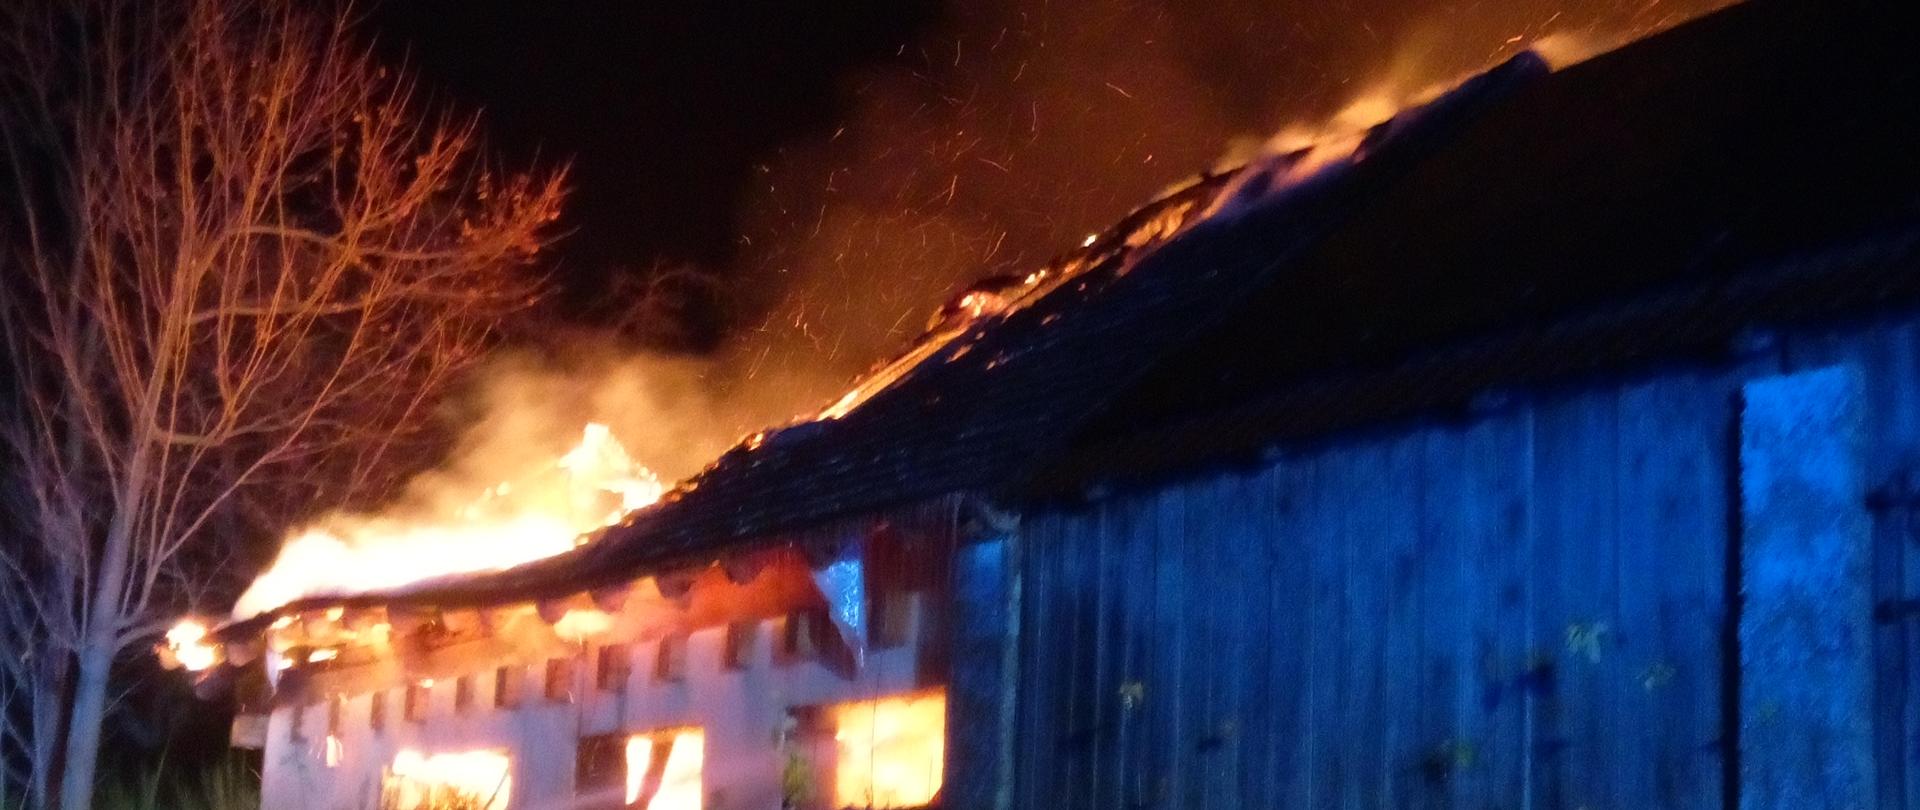 Zdjęcie przedstawia pożar budynku gospodarczego - dach budynku objęty jest ogniem. Z prawej strony widać strażaka podającego prąd gaśniczy.